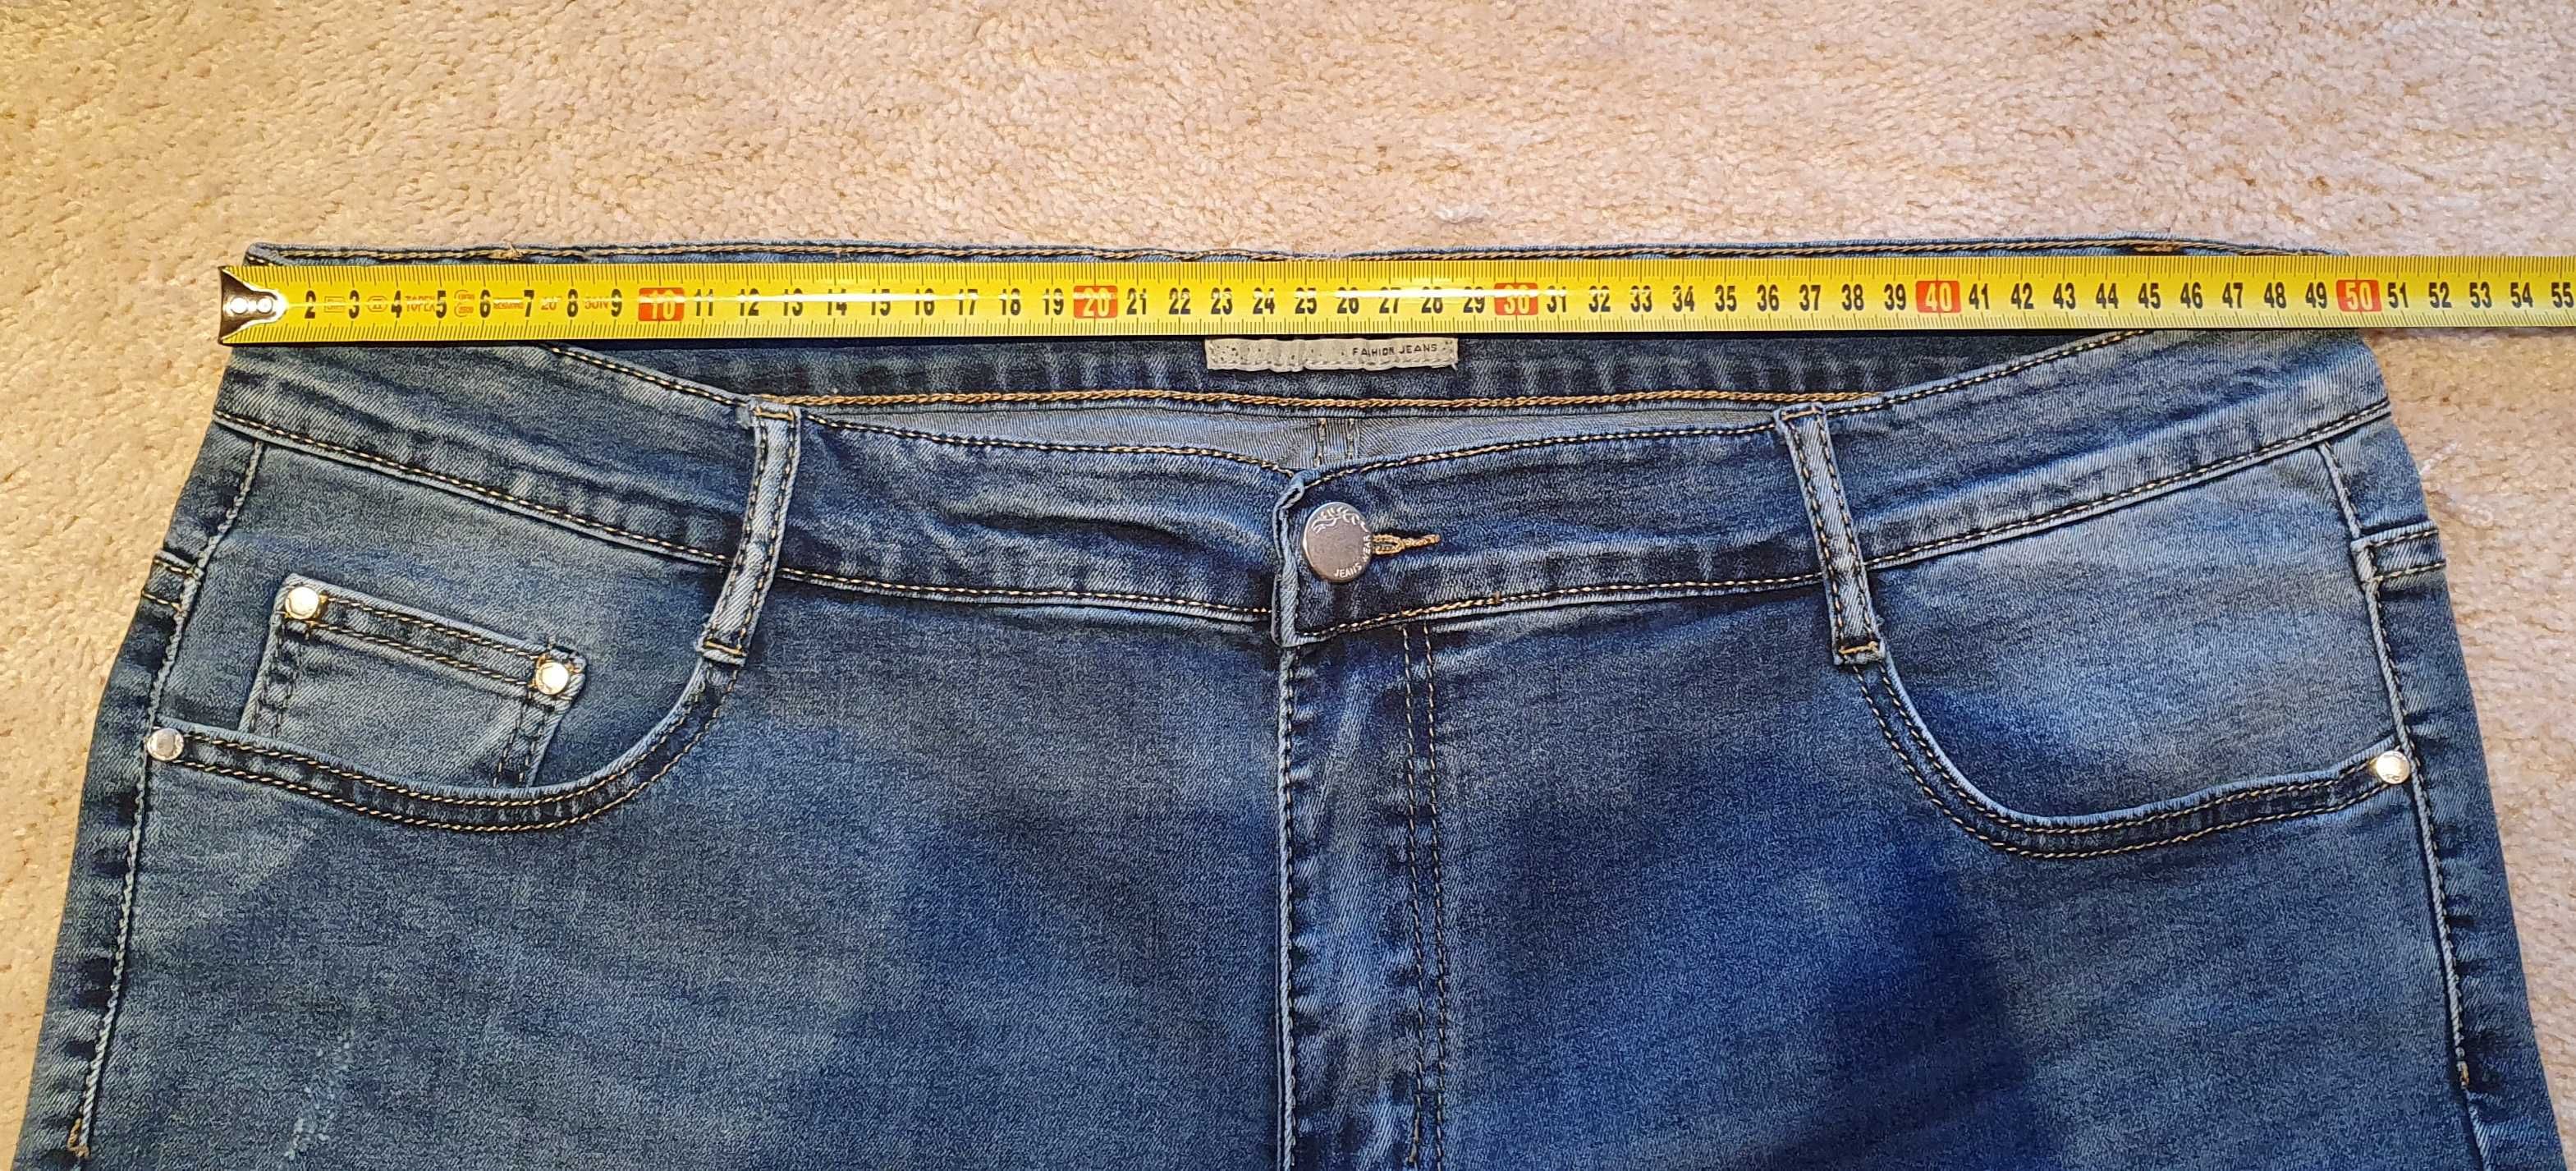 Męskie spodenki jeansowe / rozmiar 50 / nowe, nie używane